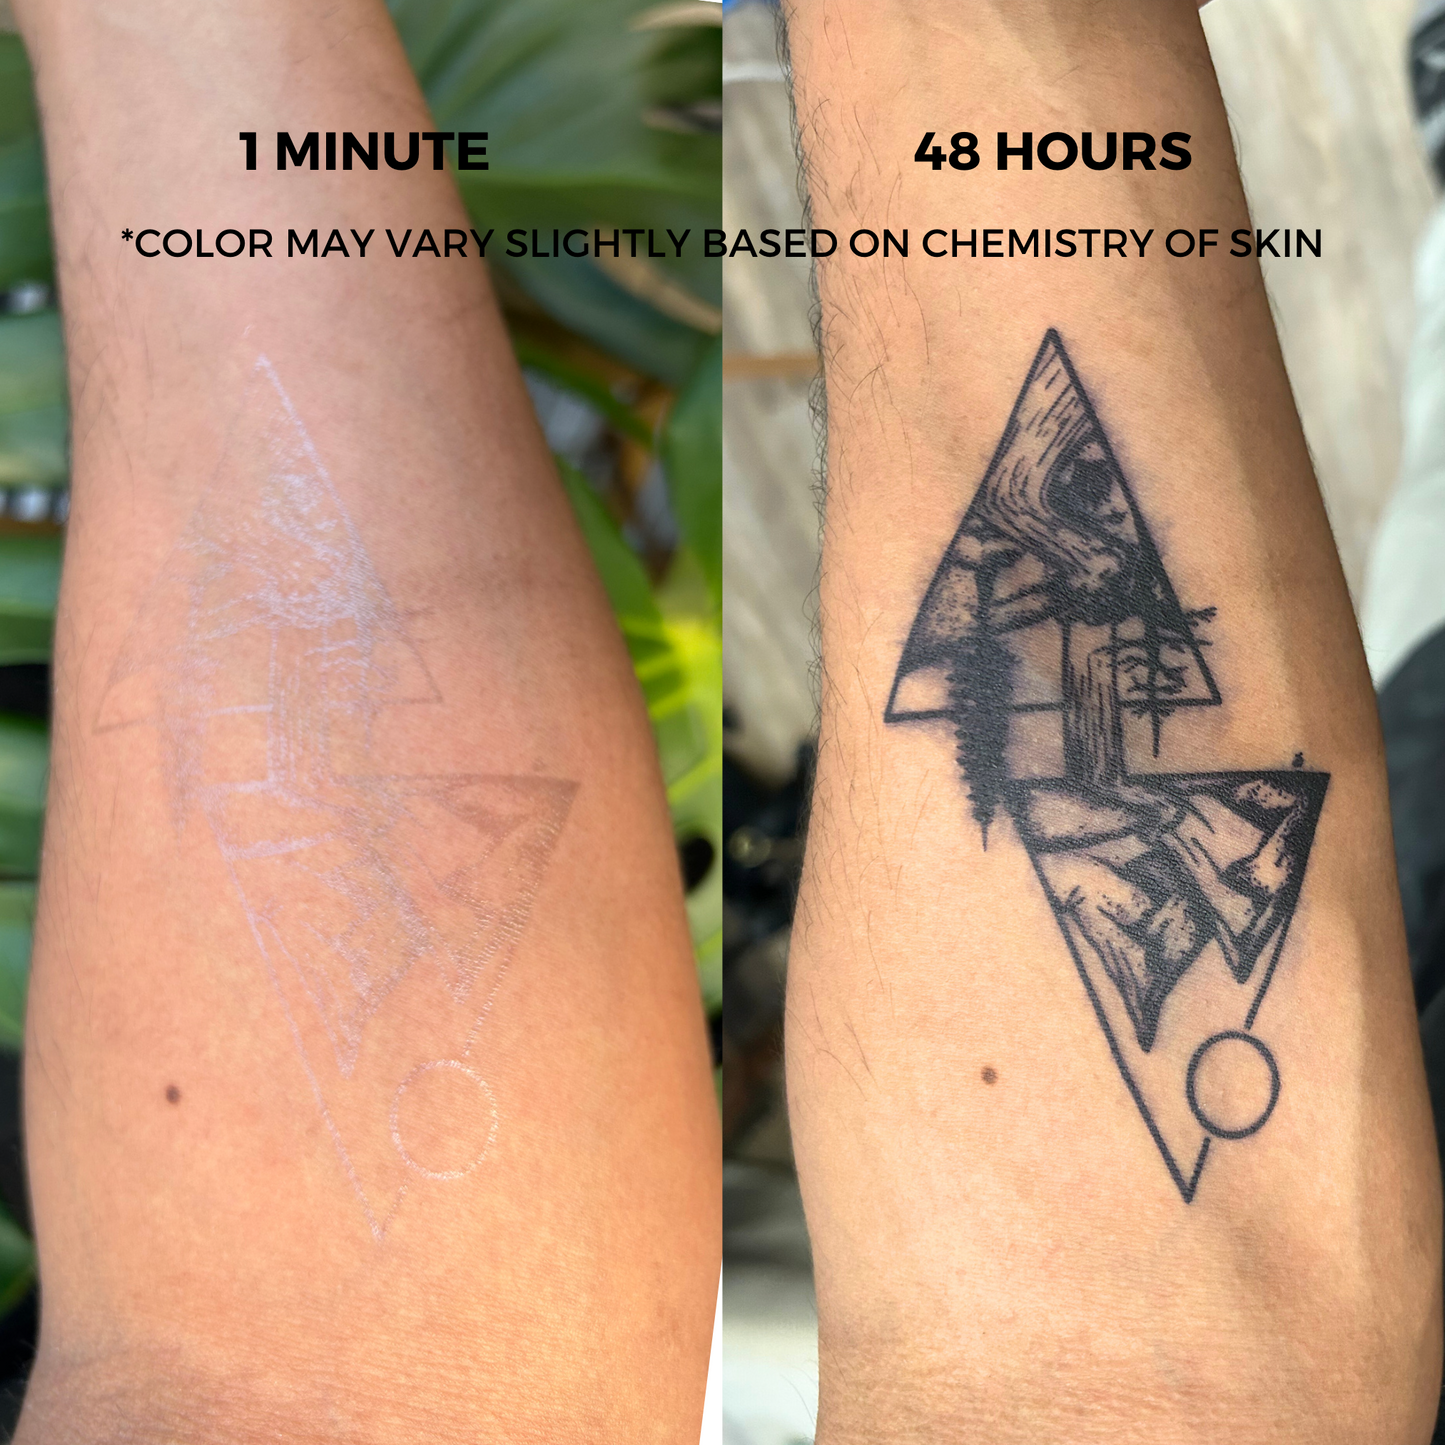 Unicorn Tattoo | 2 Week Temporary Tattoo | Plant Based Vegan Tattoo | Heart Tattoo | Festival Tattoo | Cute Tattoo